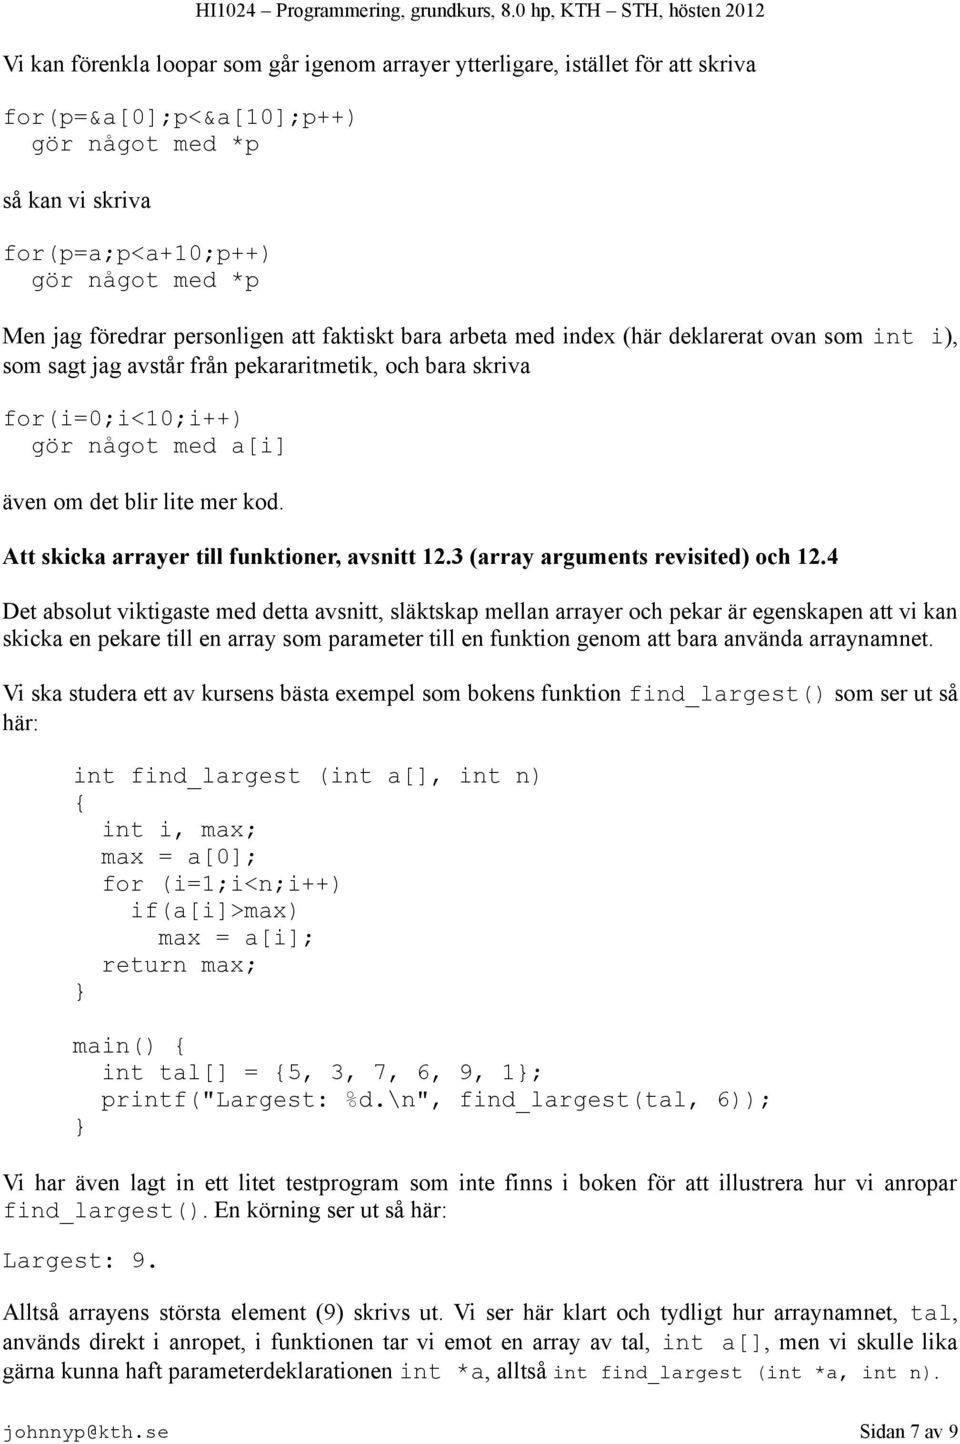 kod. Att skicka arrayer till funktioner, avsnitt 12.3 (array arguments revisited) och 12.